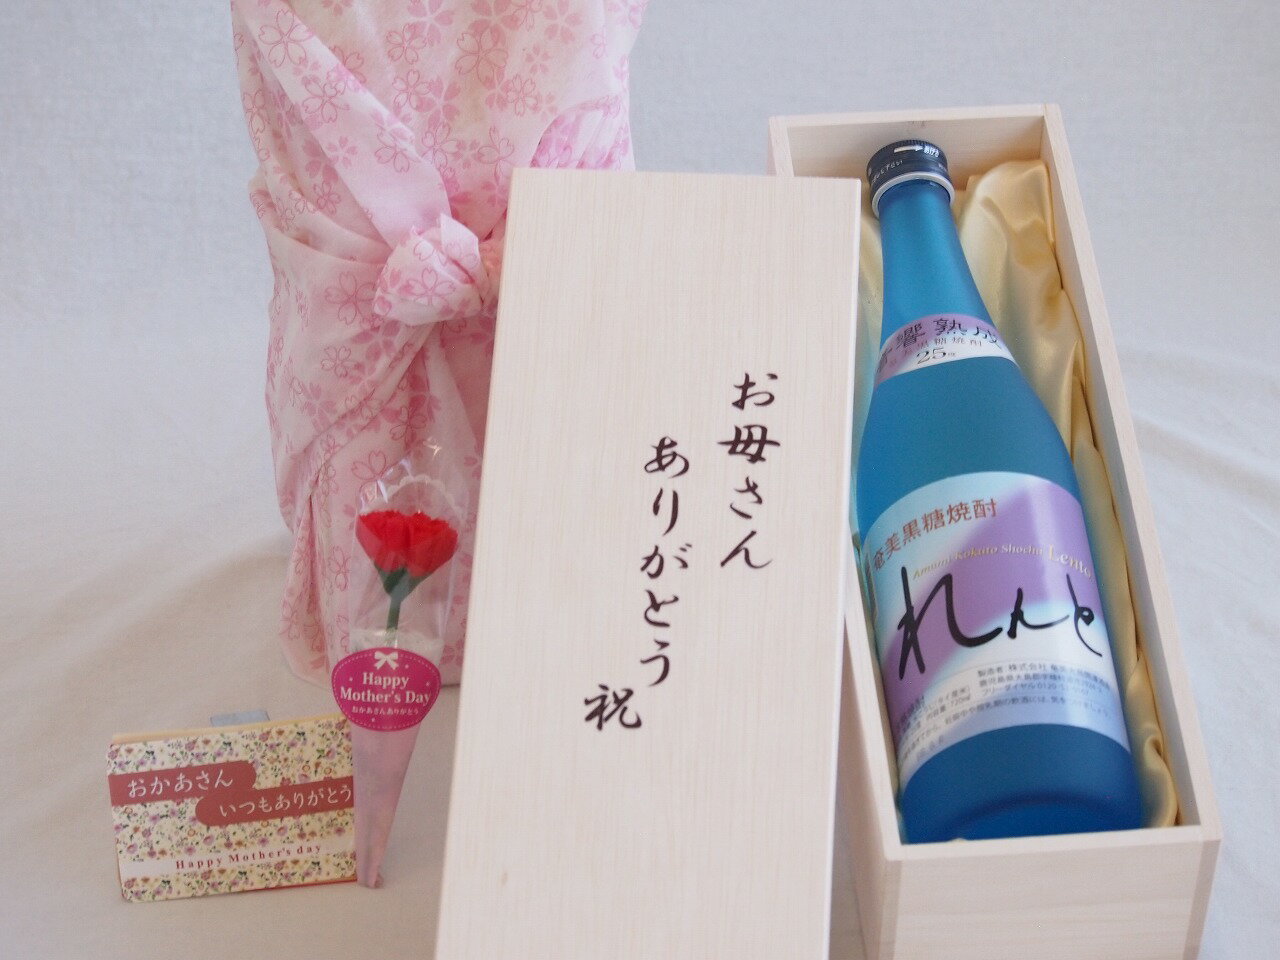 母の日 お母さんありがとう木箱セット 奄美大島開運酒造 音響